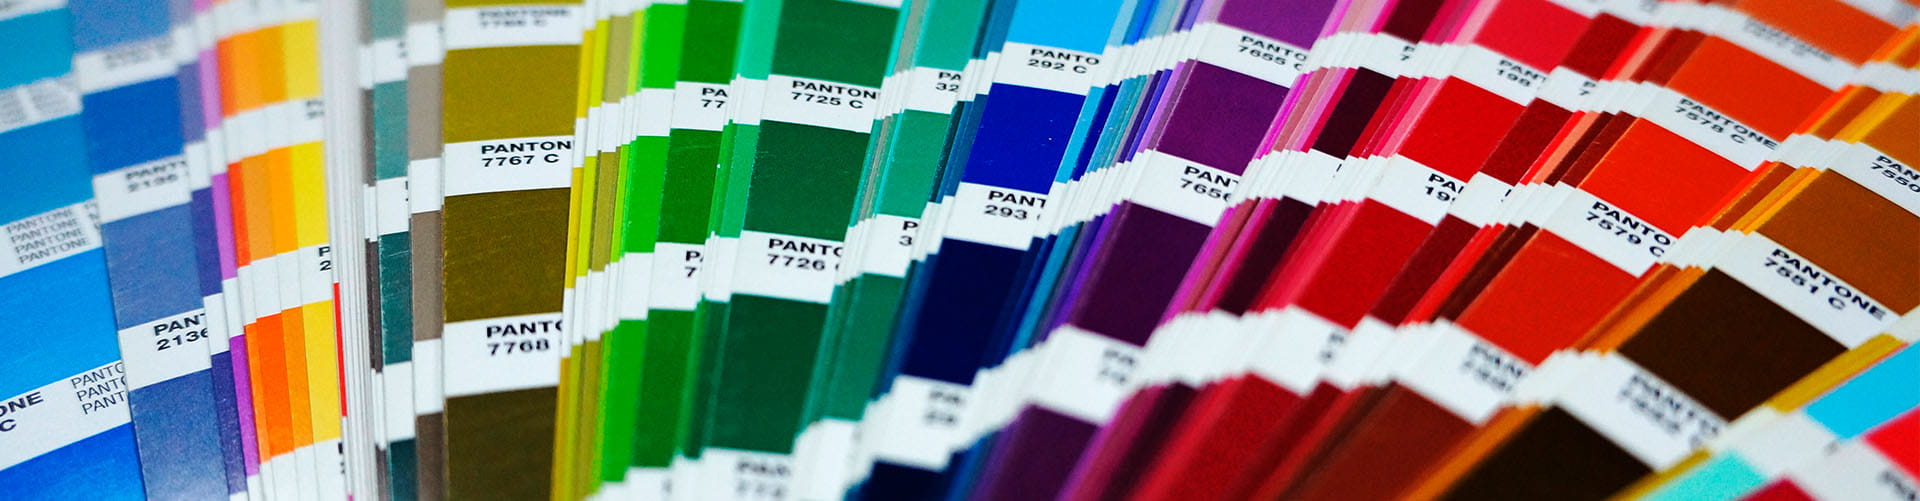 Branding: a paleta de cores na construção de uma identidade visual forte -  Estúdio Roxo